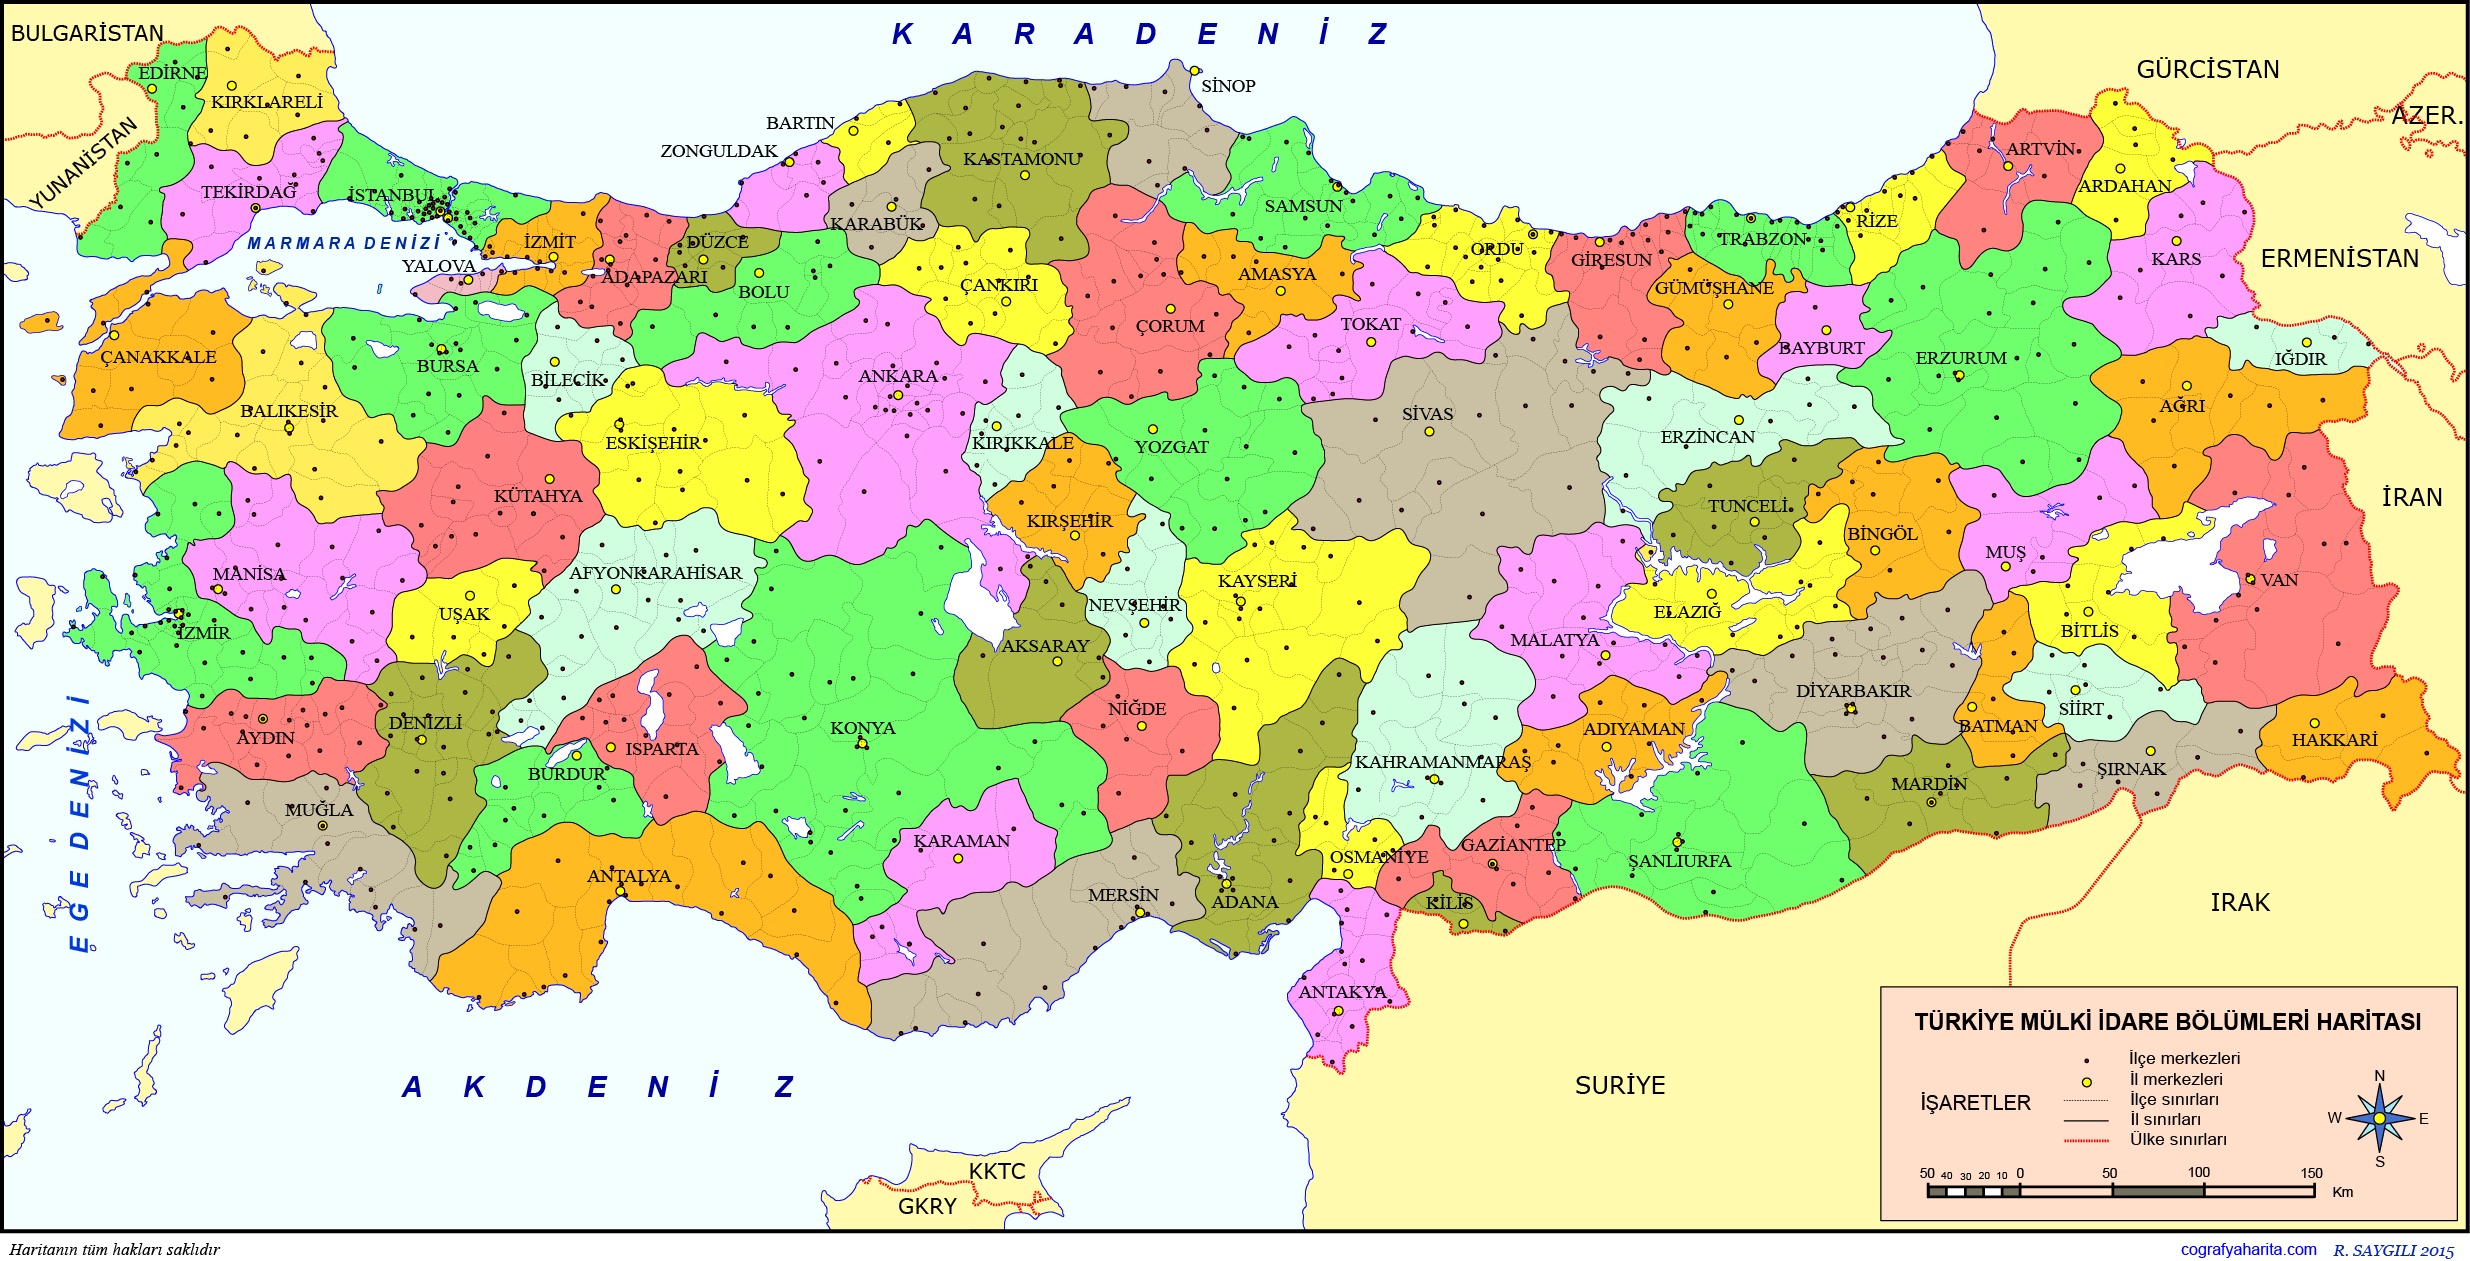 cerrahlık giyinmek Serinlemek turkiye haritasi boyama yenilenme Selsius ...